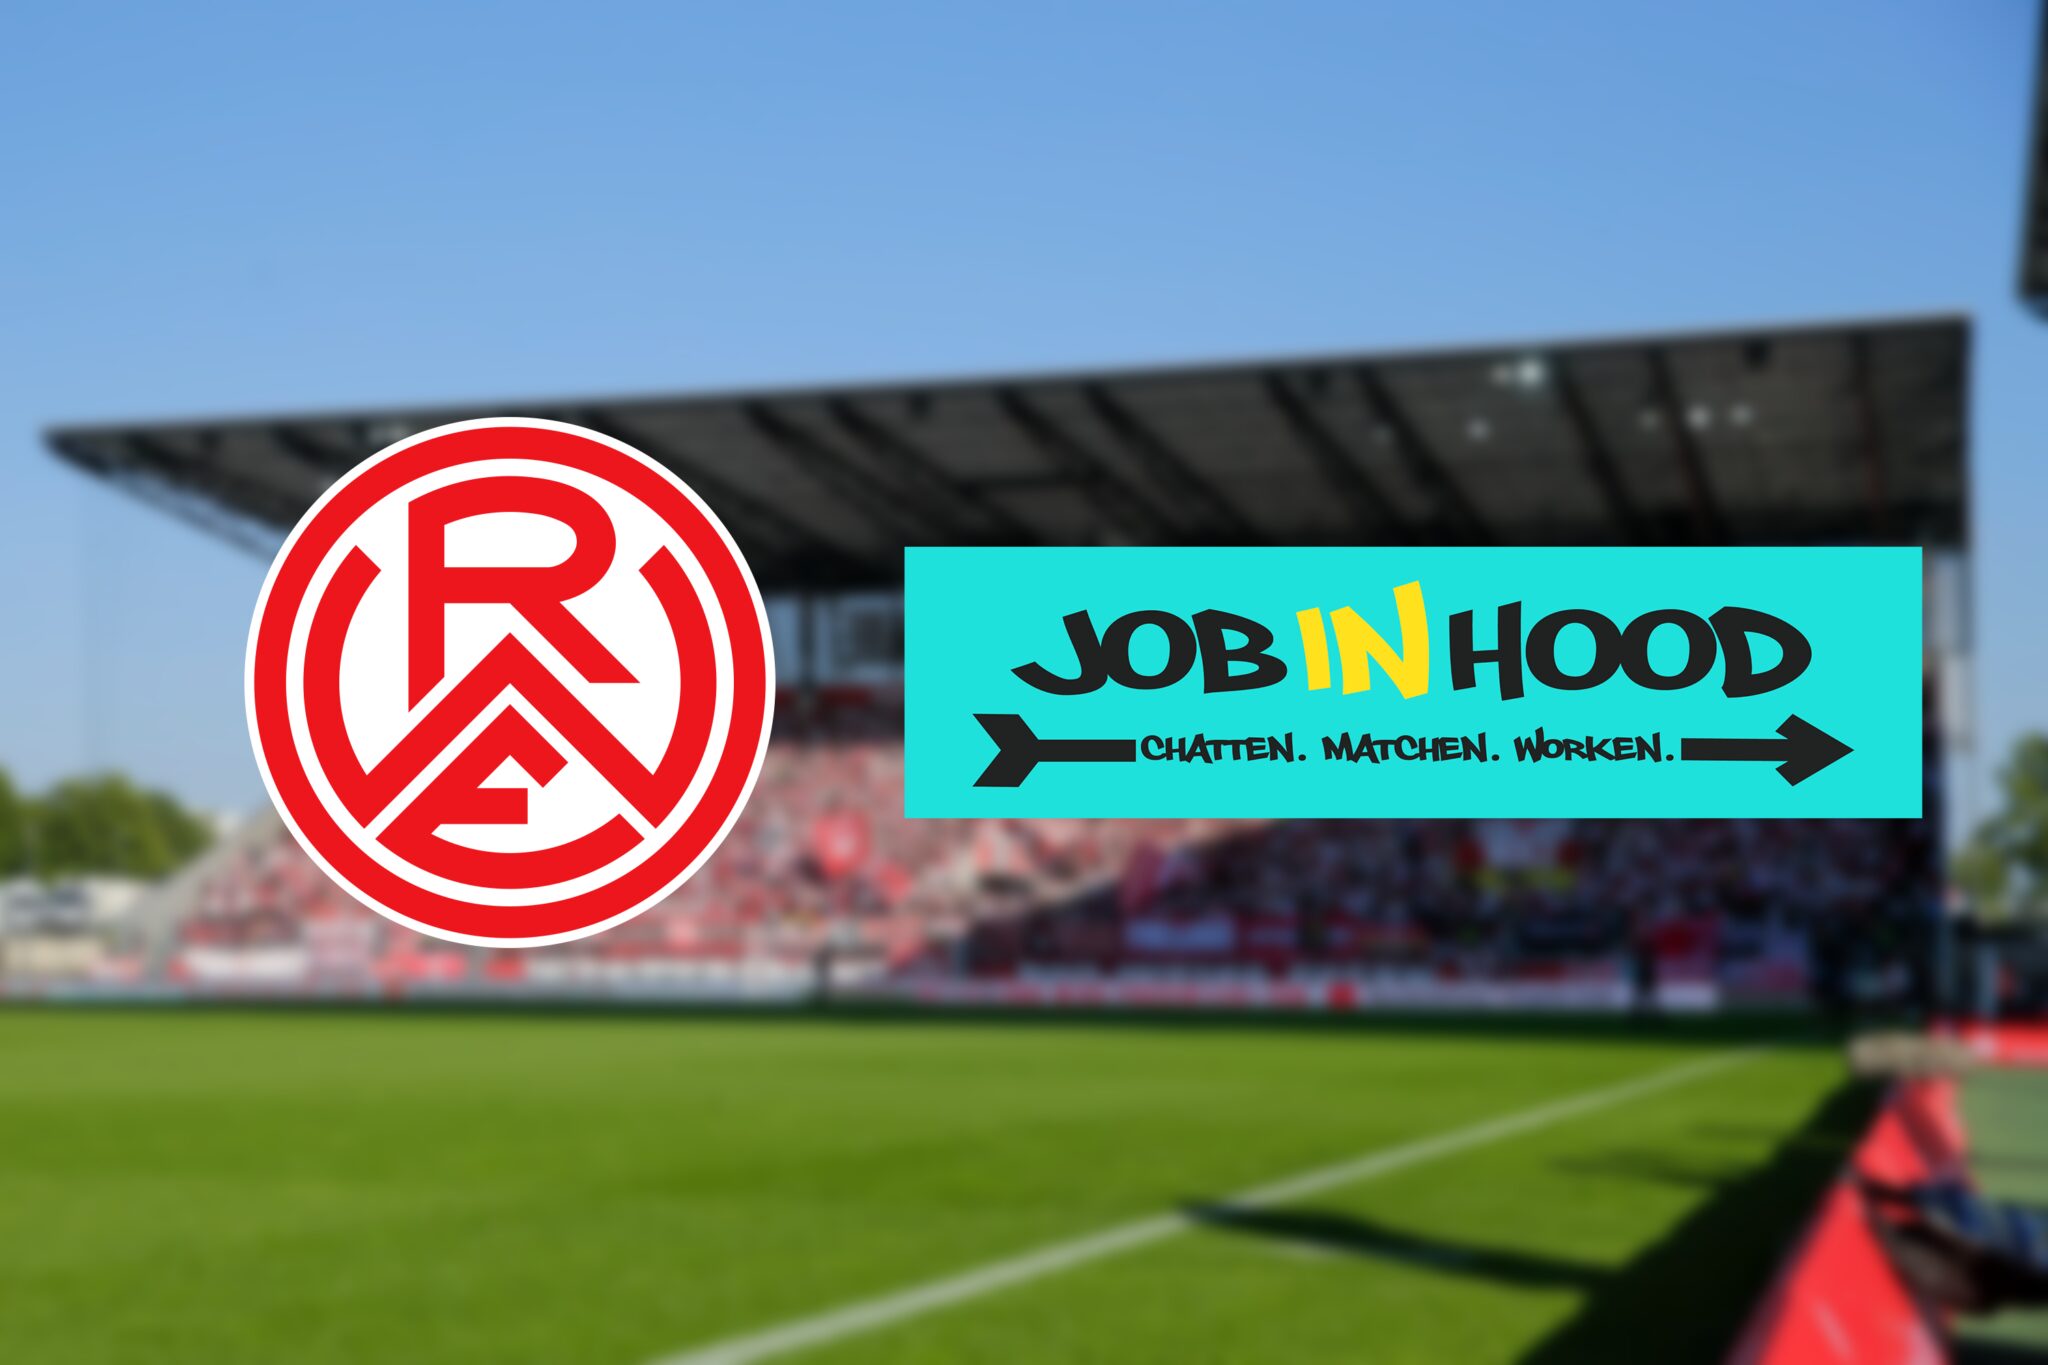 JOBIN HOOD wird Business Partner bei Rot-Weiss Essen.